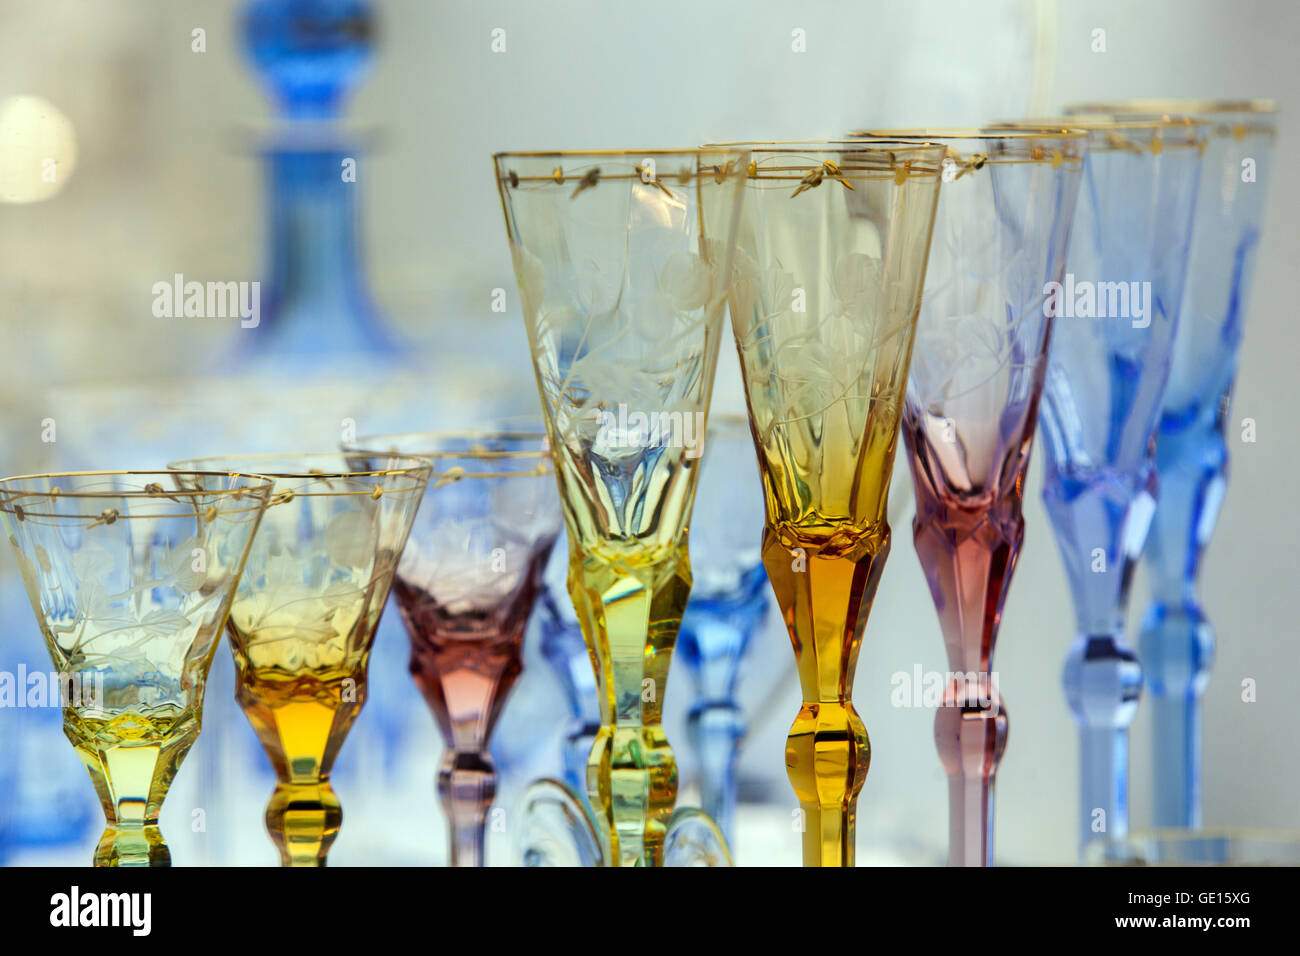 Moser glassworks Karlovy Vary Bohemia crystal glass Czech Republic Glassware Stock Photo